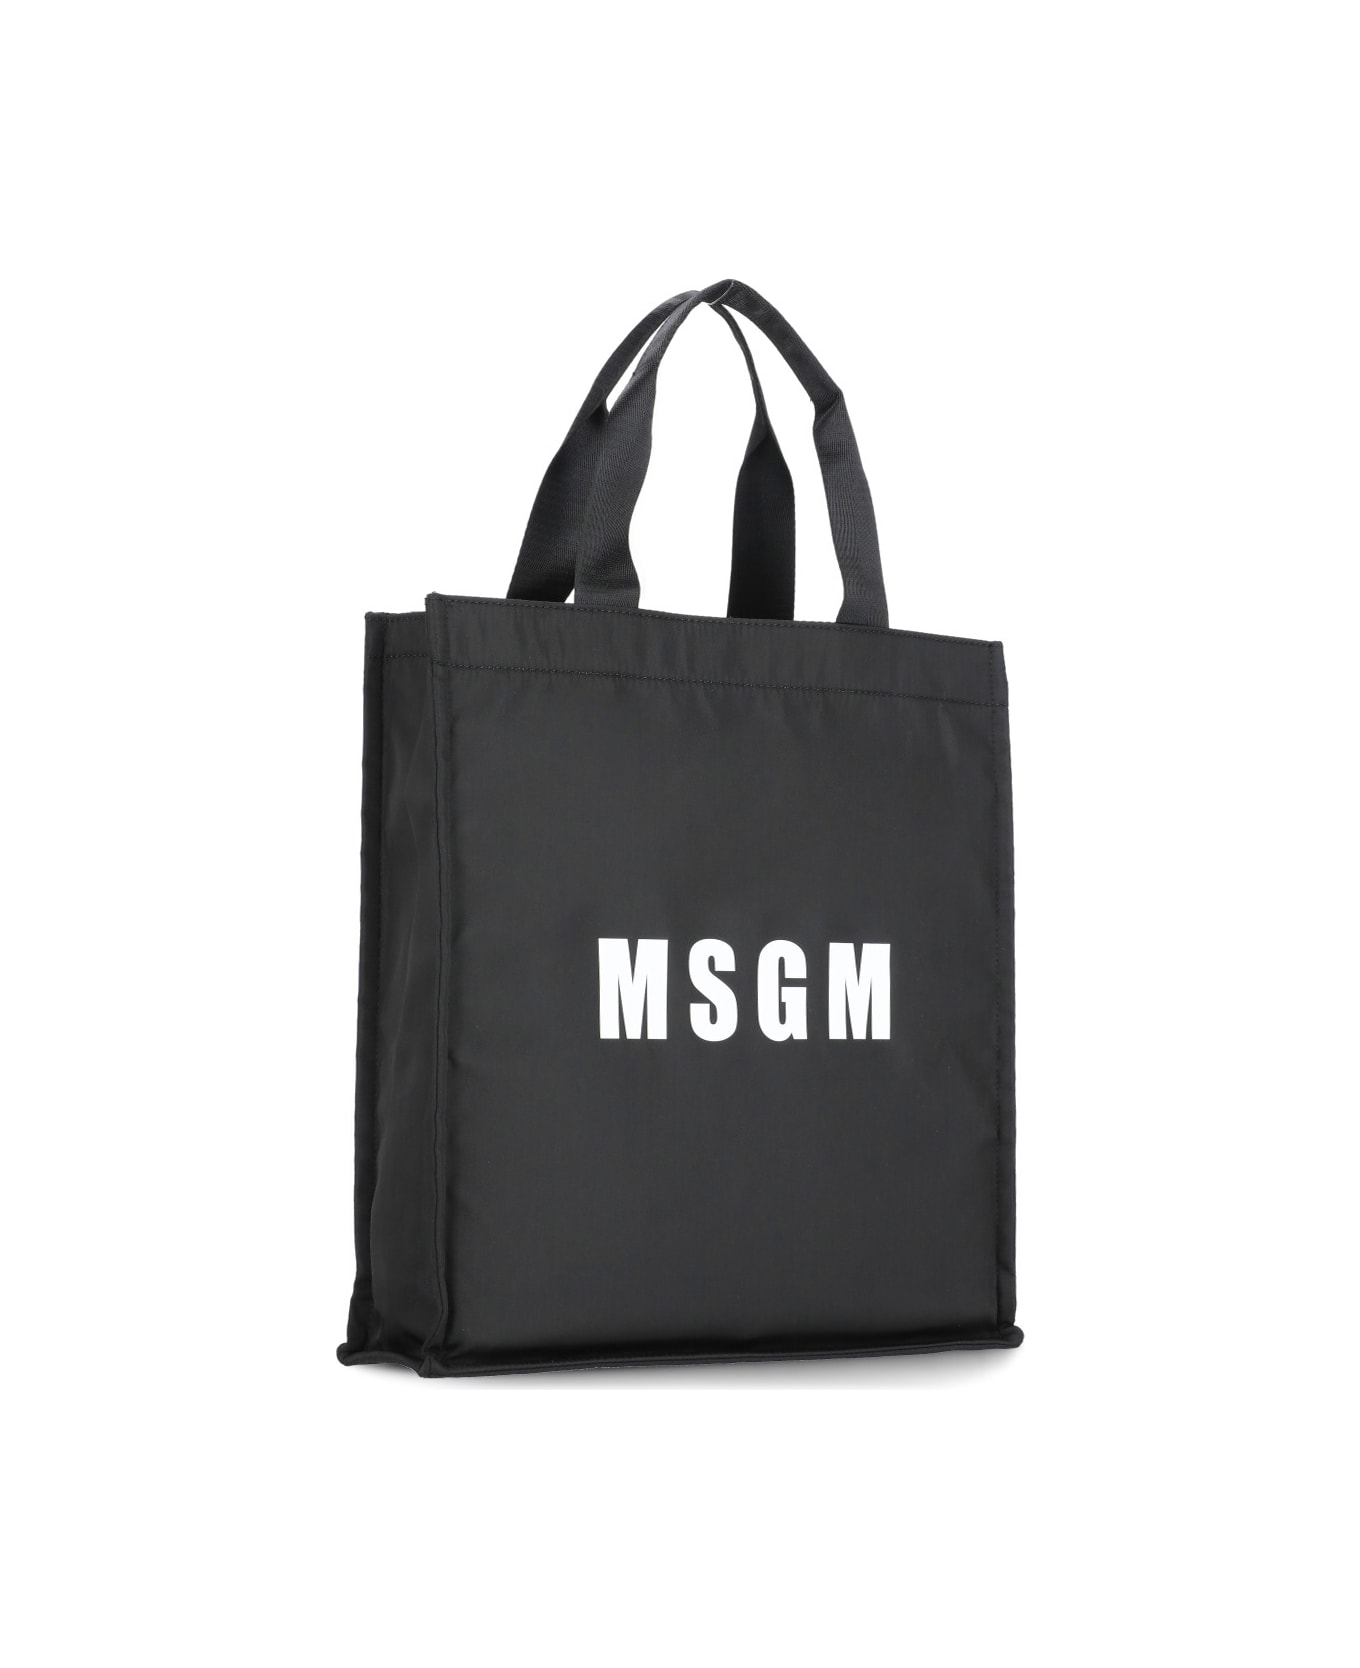 MSGM Tote Shoulder Bag - Black トートバッグ